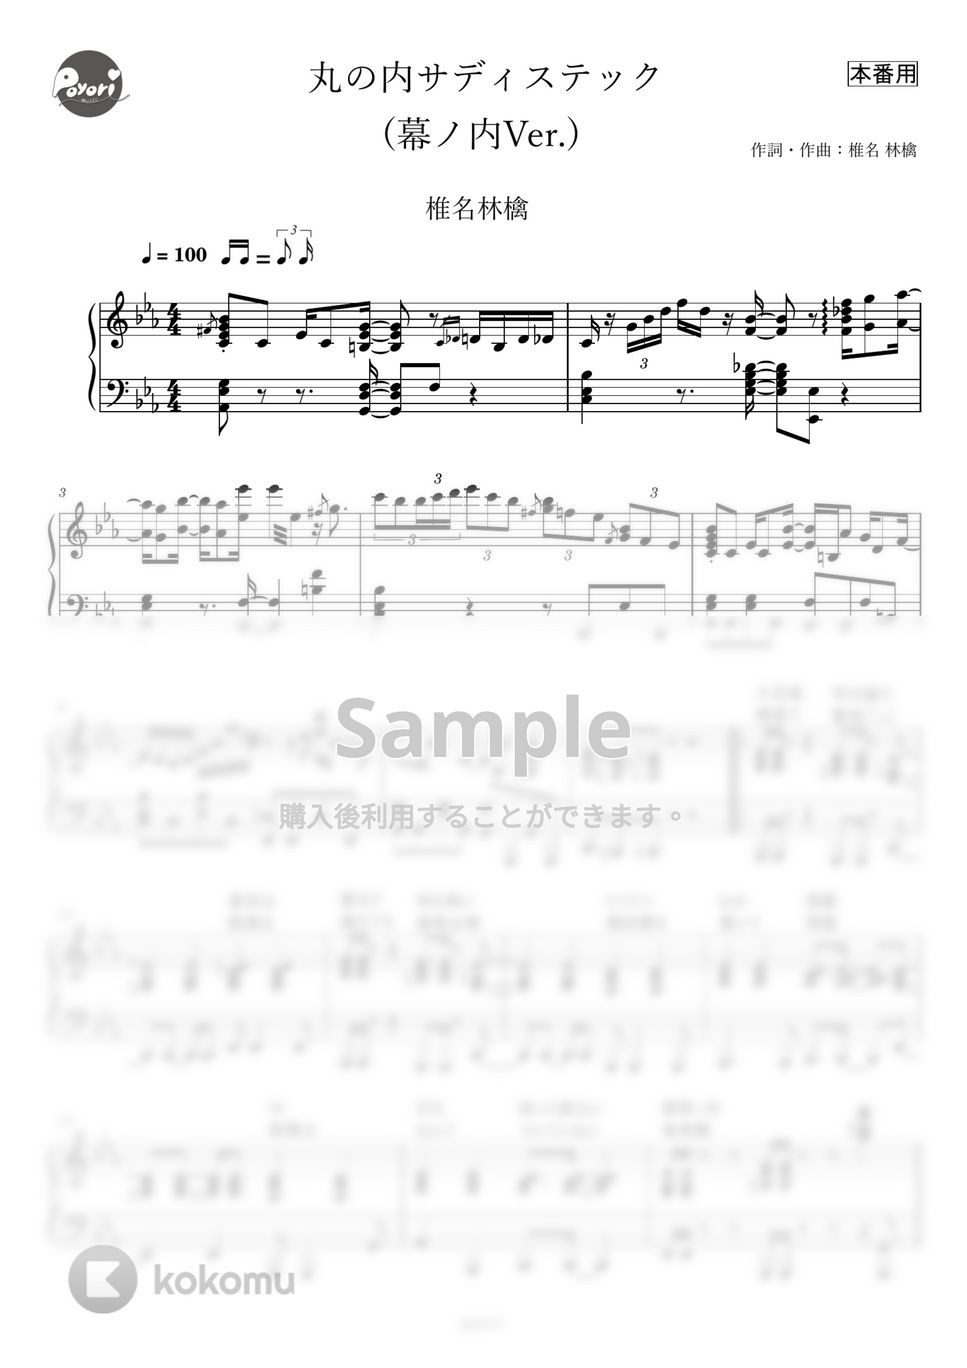 椎名林檎 - 丸の内サディスティック (ピアノ伴奏/本番譜) by poyori